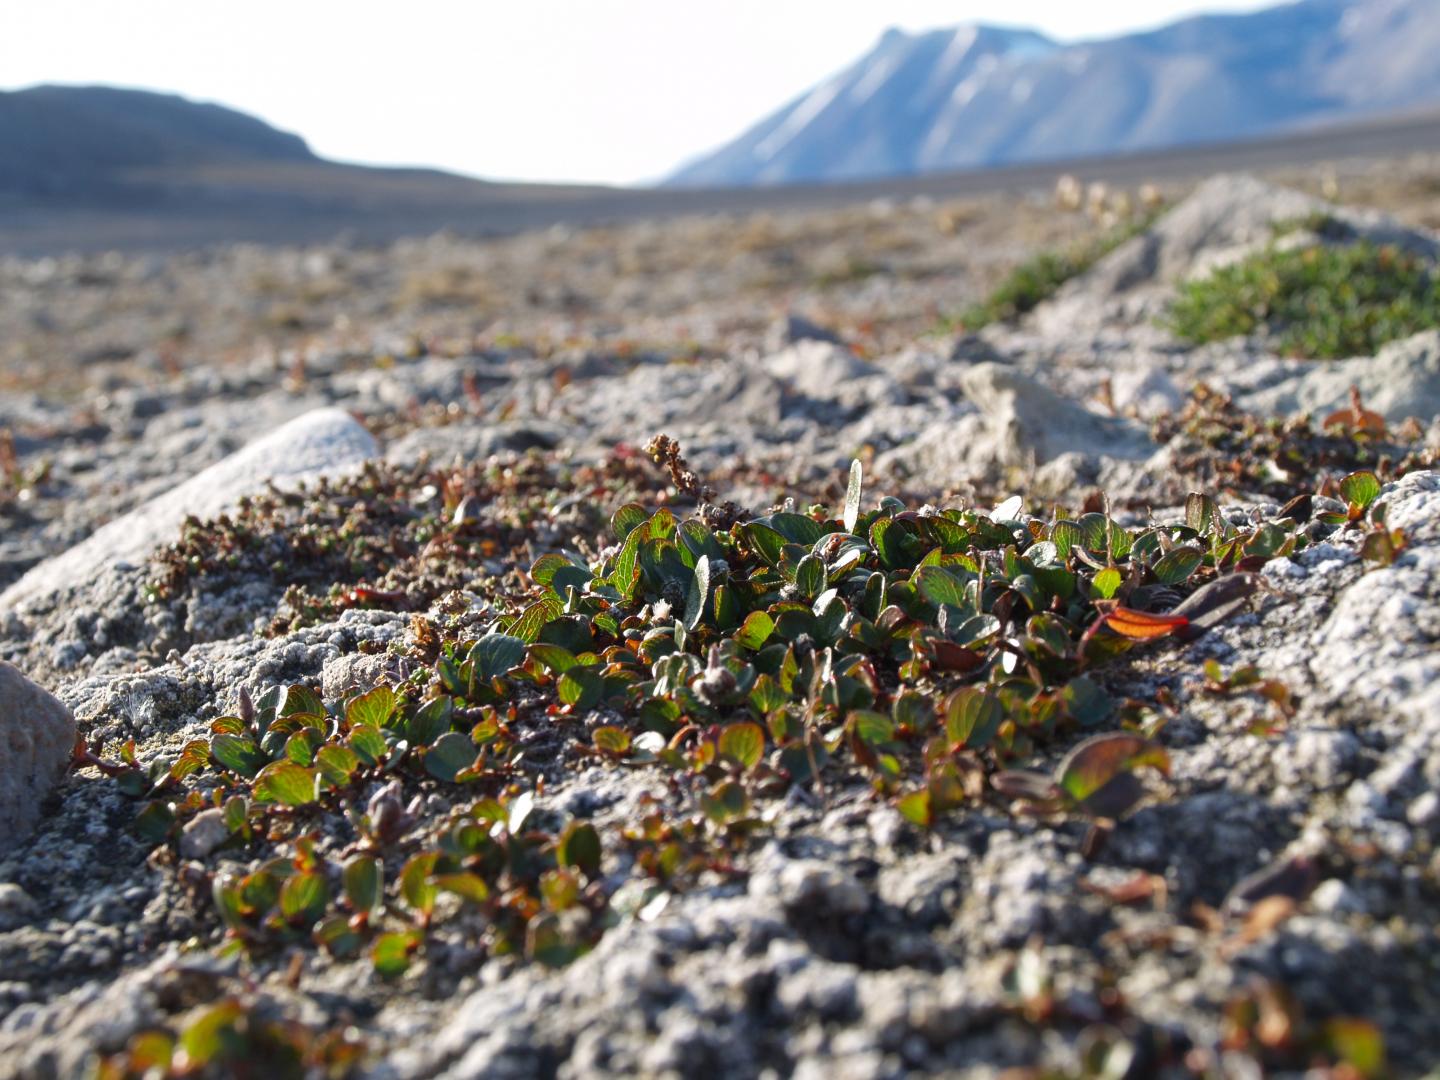 Salix polaris dwarf shrub from central Spitsbergen